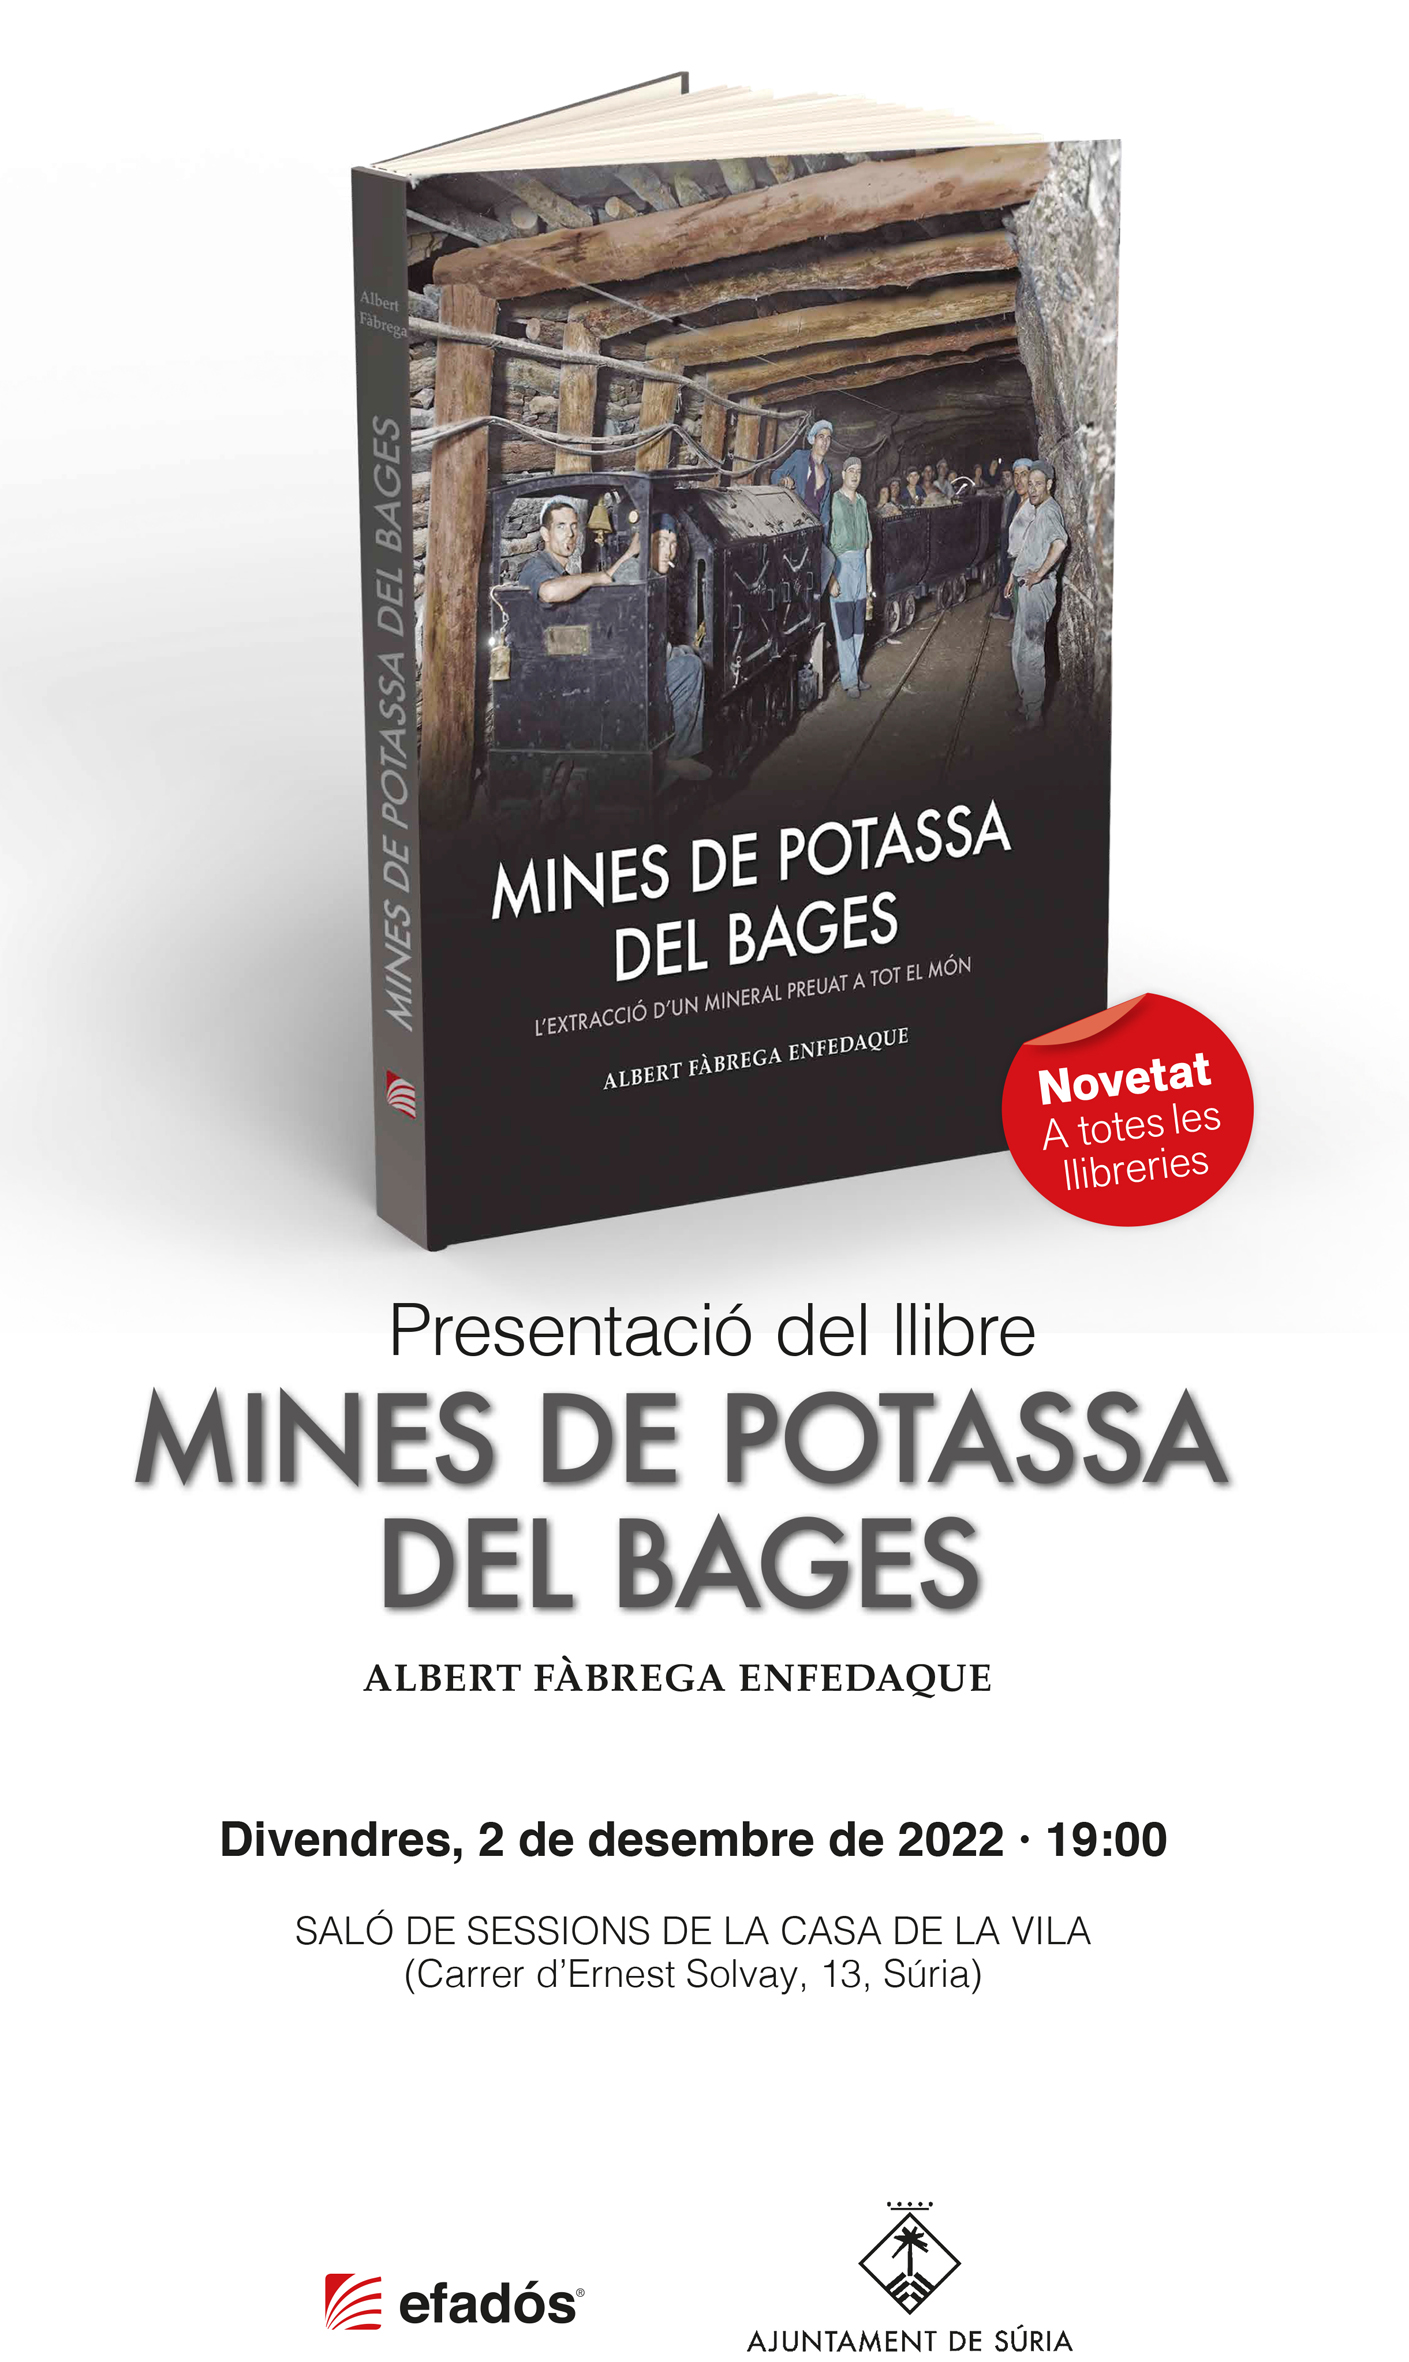 Presentació del llibre 'Mines de potassa del Bages' d'Albert Fàbrega Enfedaque